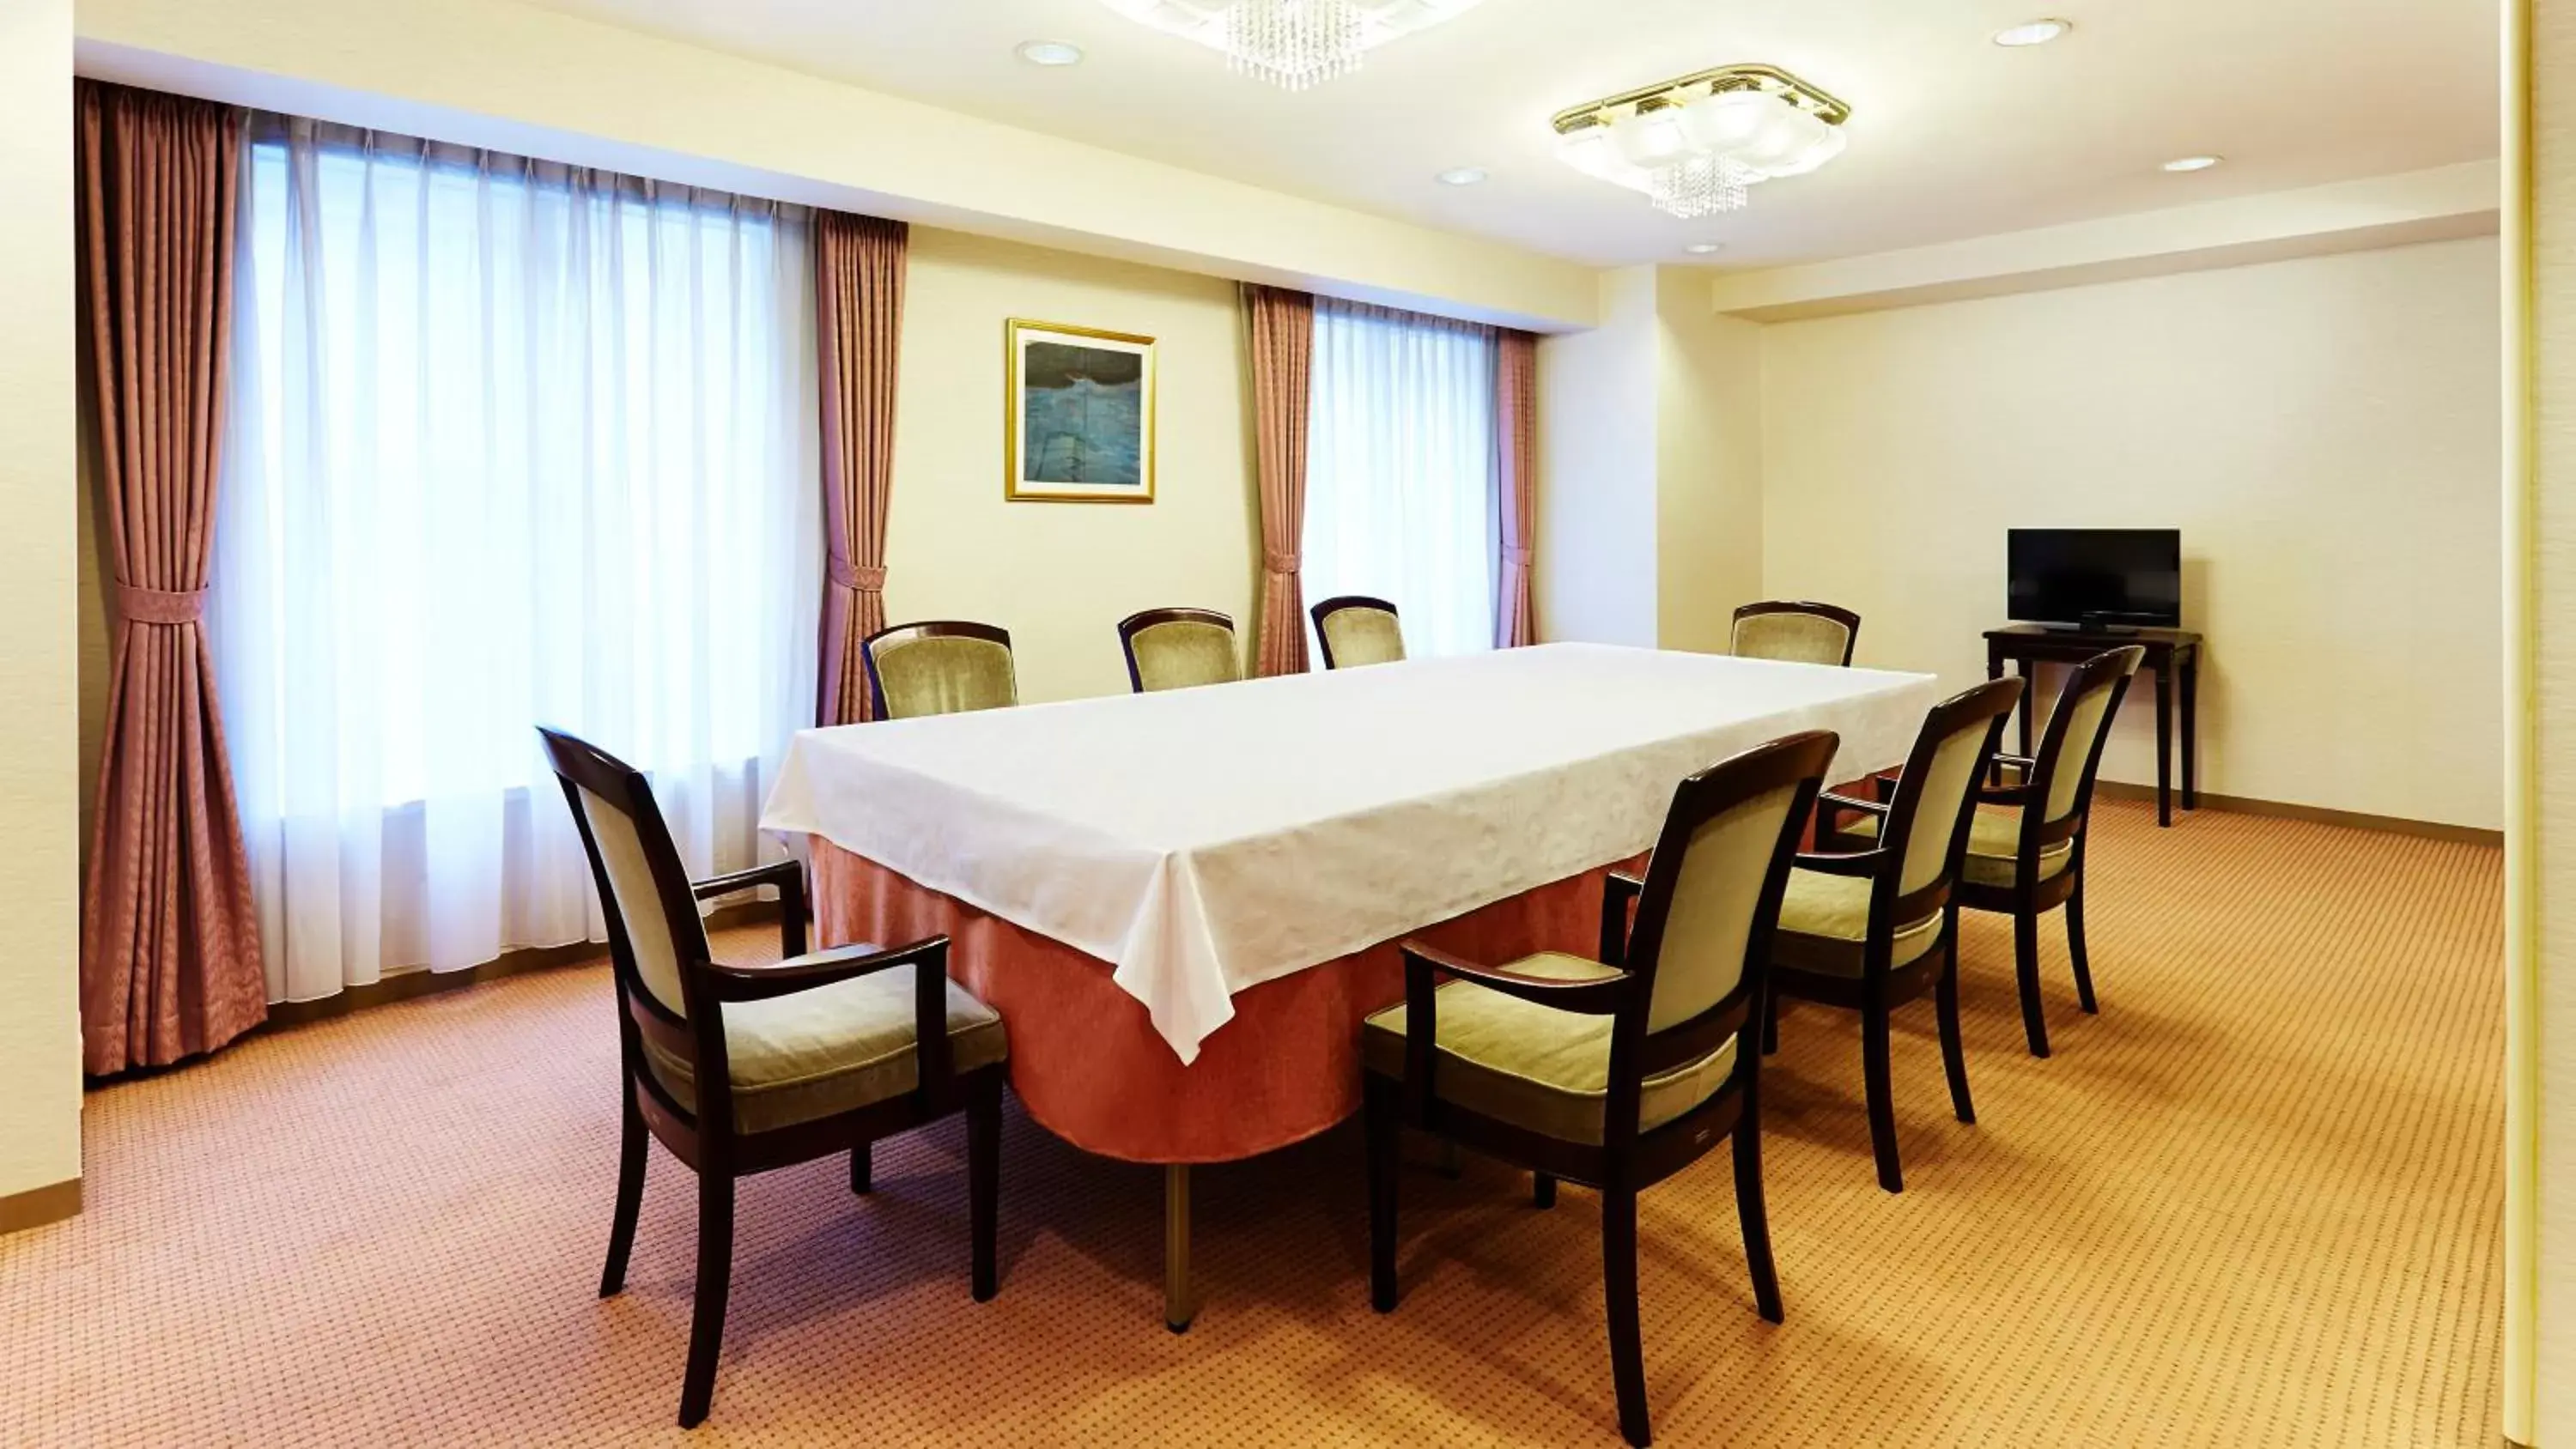 Meeting/conference room in RIHGA Royal Hotel Osaka